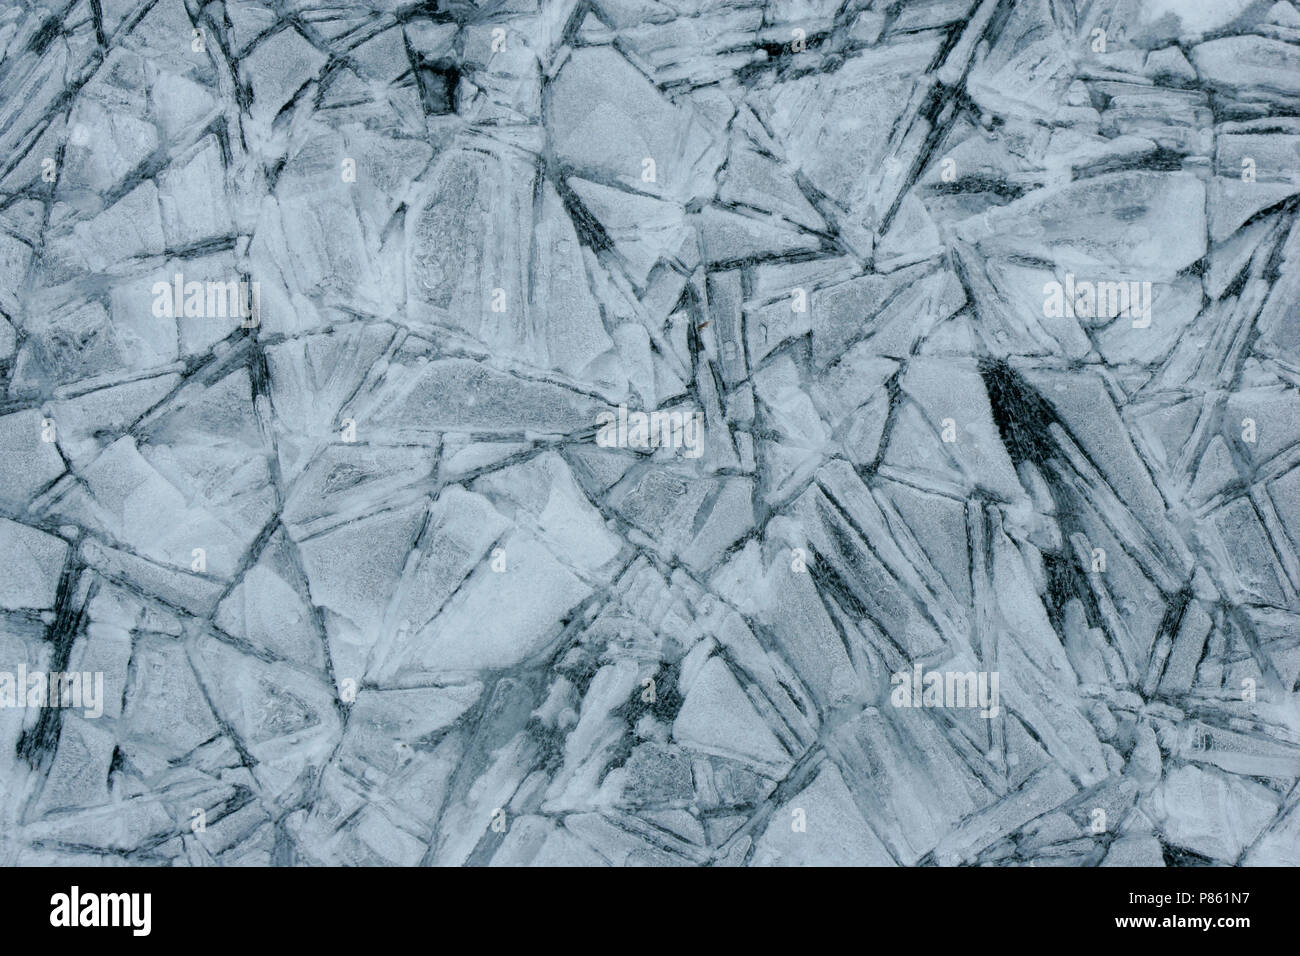 IJskristallen, cristaux de glace Banque D'Images